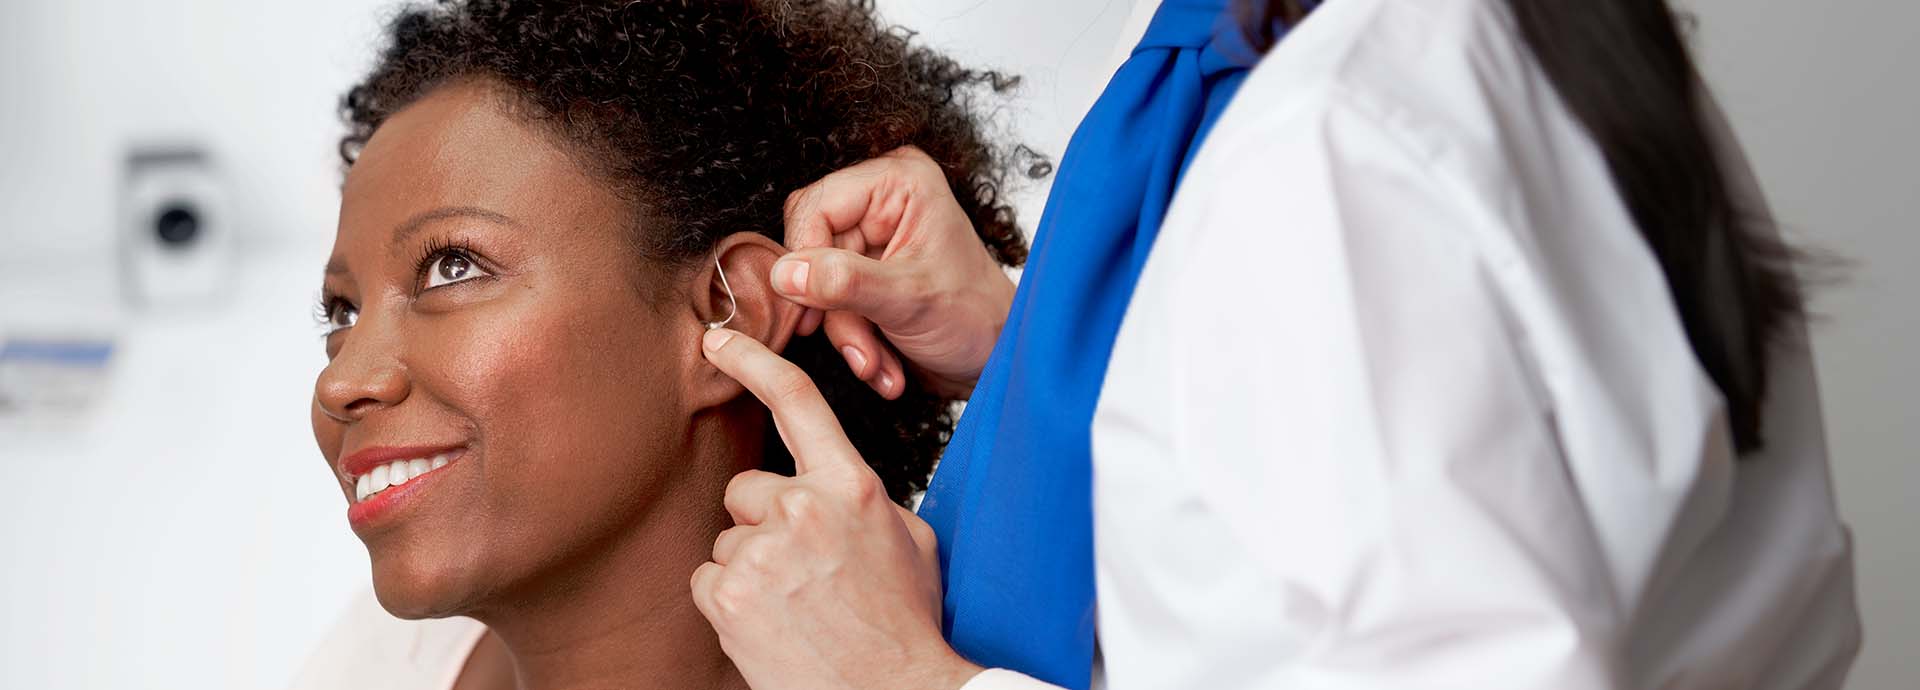 Billede viser en kvinde med et høreapparat bag øret